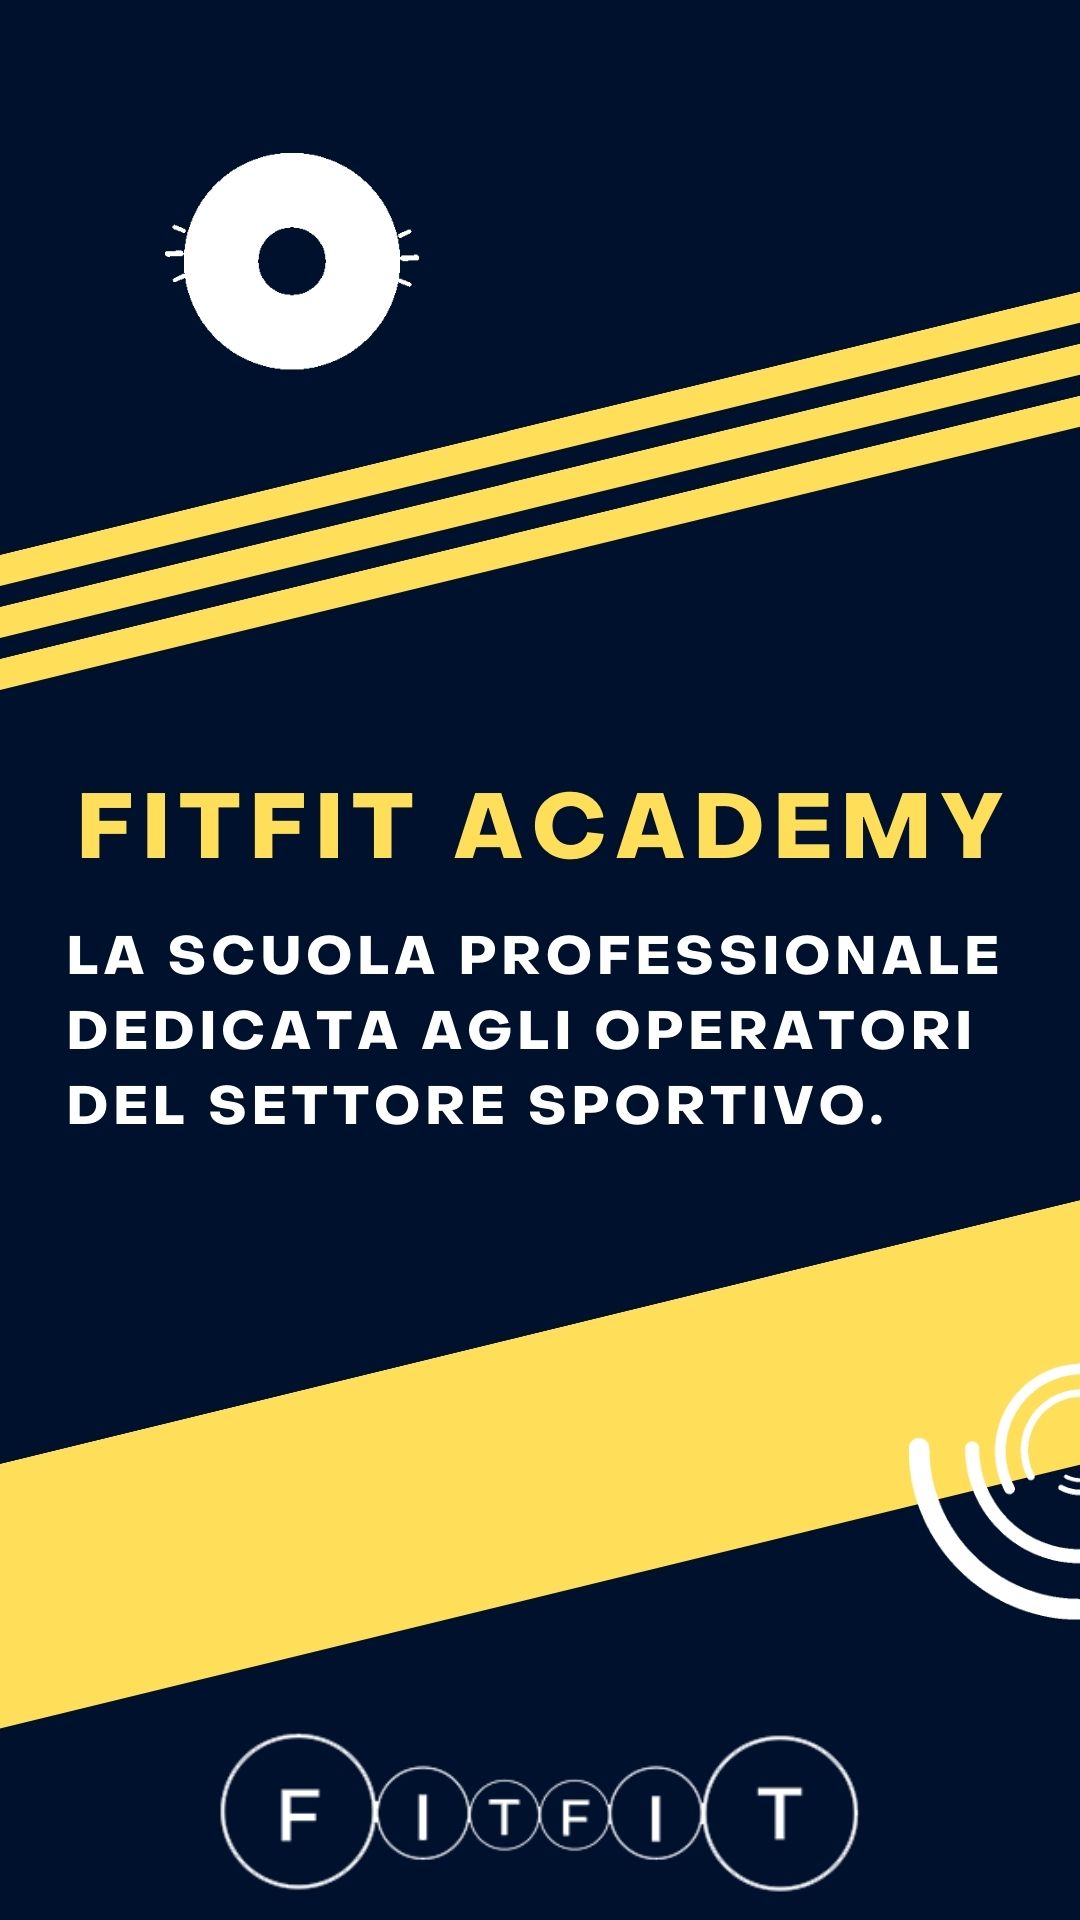 FitFit Academy la scuola professionale dedicata agli operatori del settore sportivo.